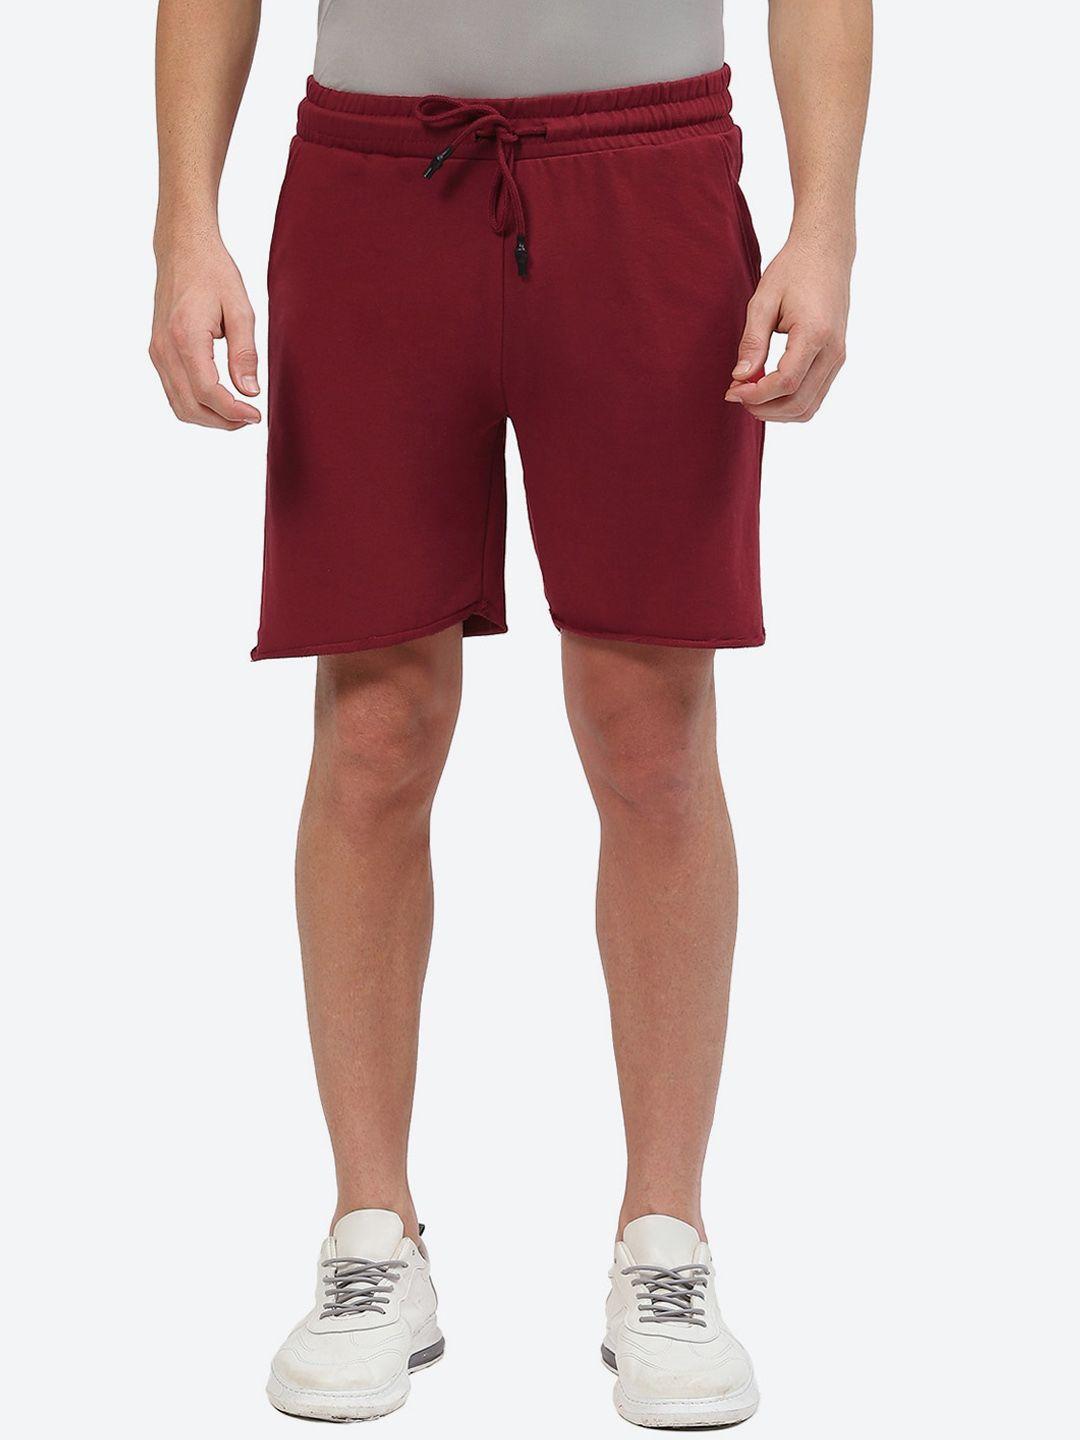 2bme men regular fit mid-rise cotton sports shorts